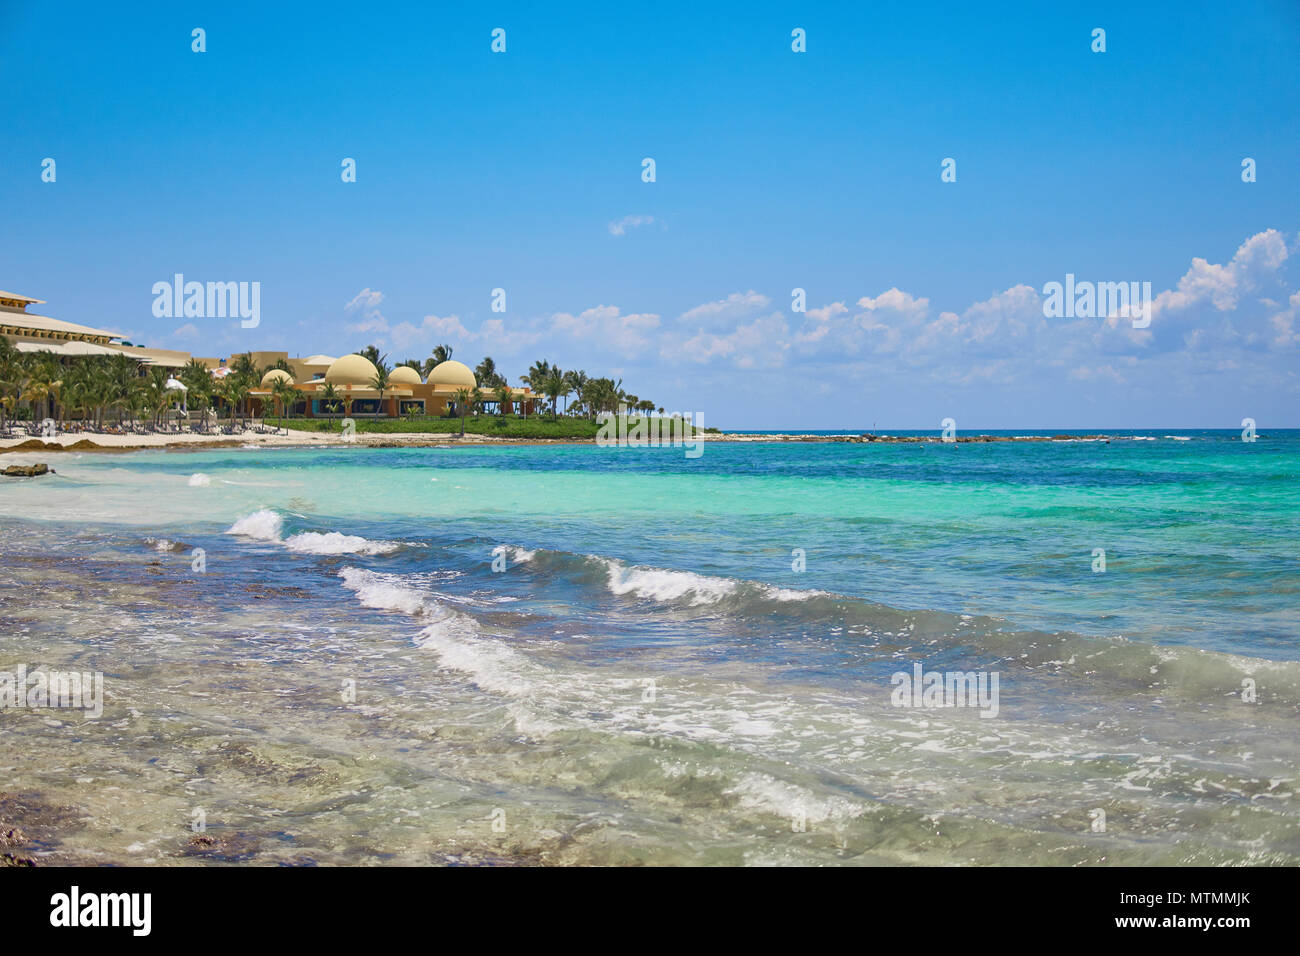 Vista resort hotel di lusso di spiaggia di Costa Tropicale. Foglie di palme da cocco che fluttua nel vento contro il cielo blu. Acque turchesi del Mar dei Caraibi. Riviera Maya Messico. Foto Stock